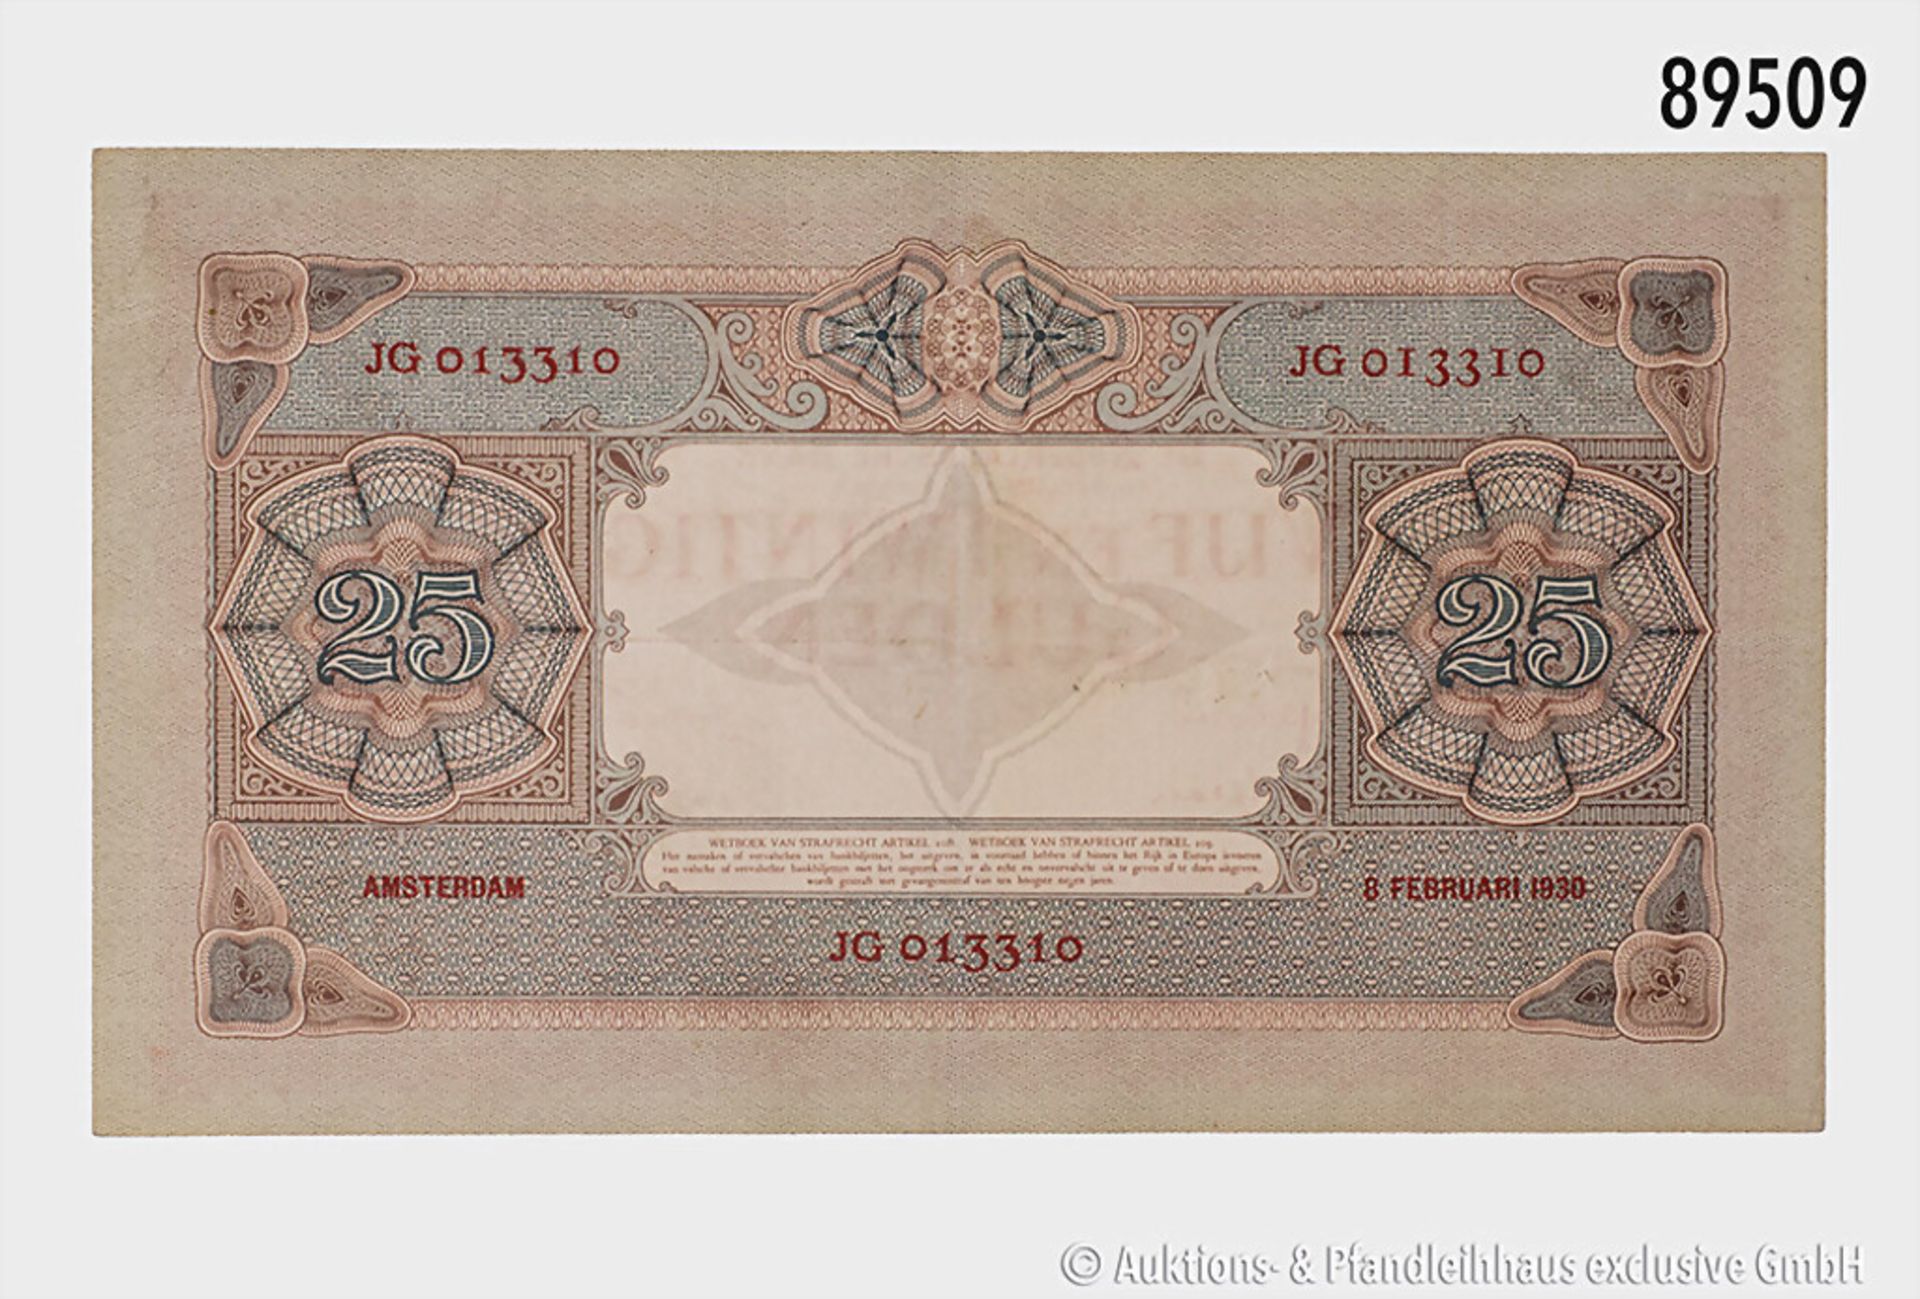 Niederlande, 25 Gulden, 8. Februar 1930, JG 013310, Knickspuren, gebraucht, ... - Bild 2 aus 2